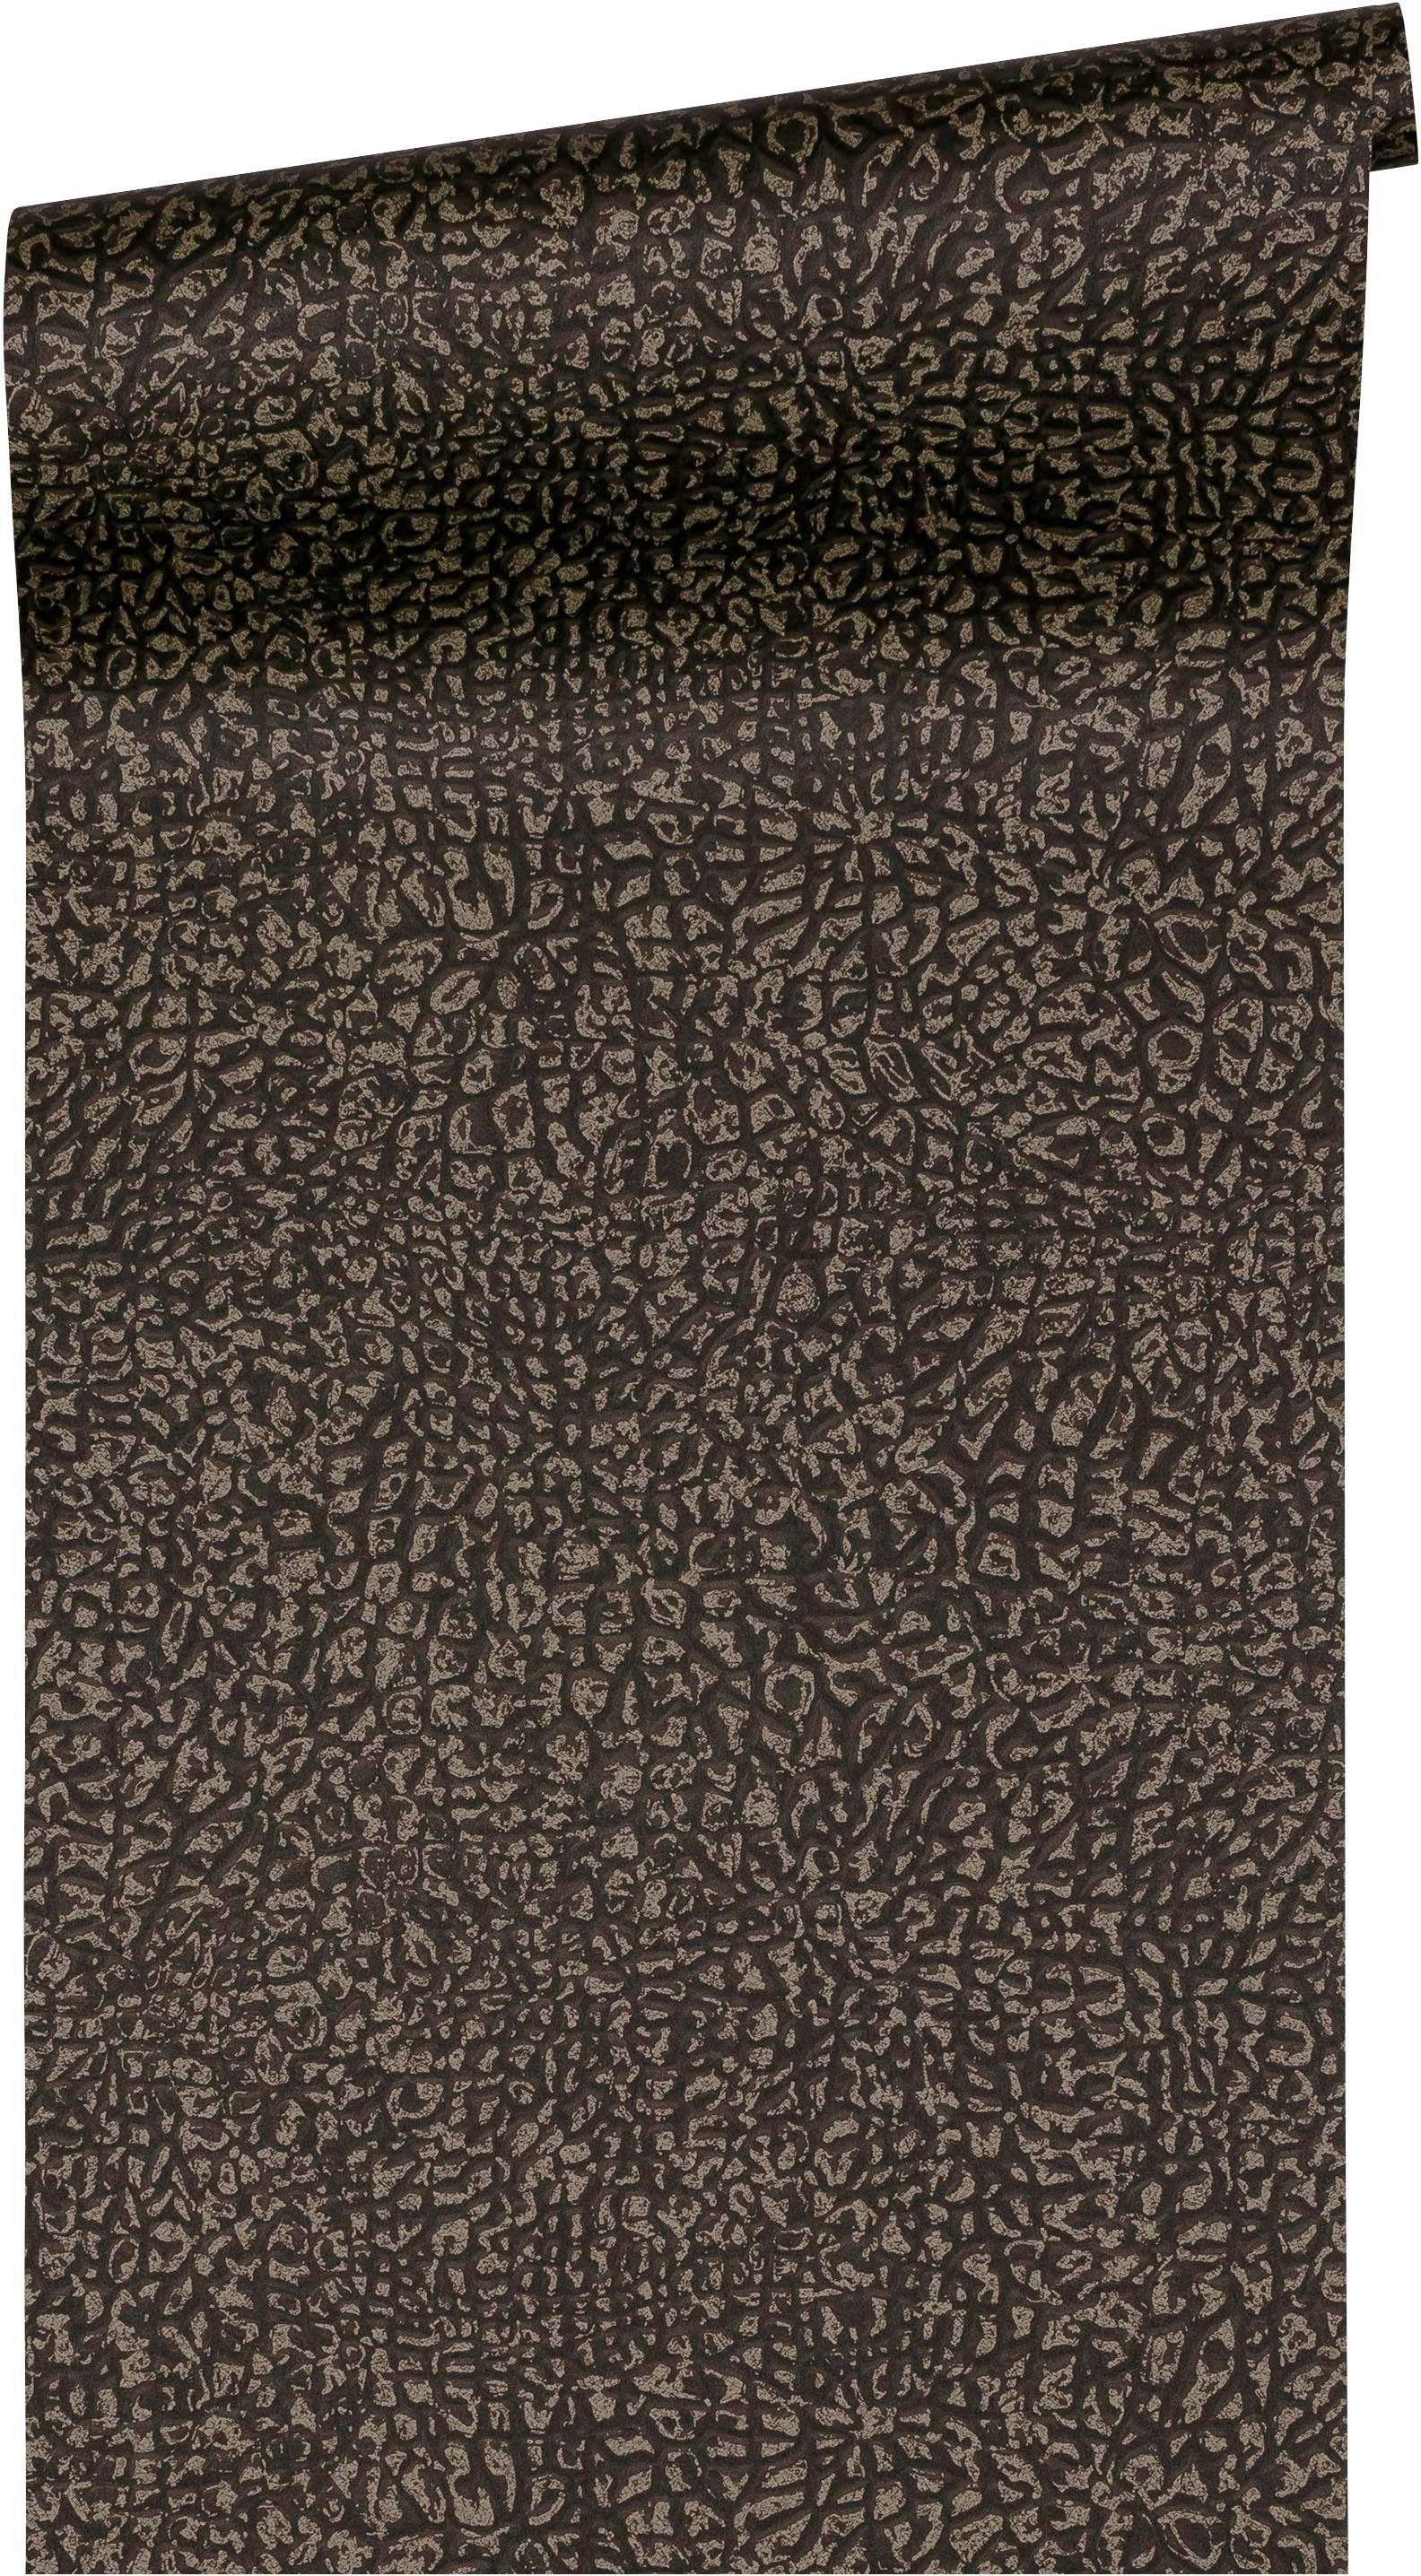 glänzend, Vliestapete Leopard Designtapete braun/dunkelbraun/goldfarben/metallic glatt, Chic, animal Architects St), Absolutely Paper Tapete print, organisch, A.S. Création (1 matt,